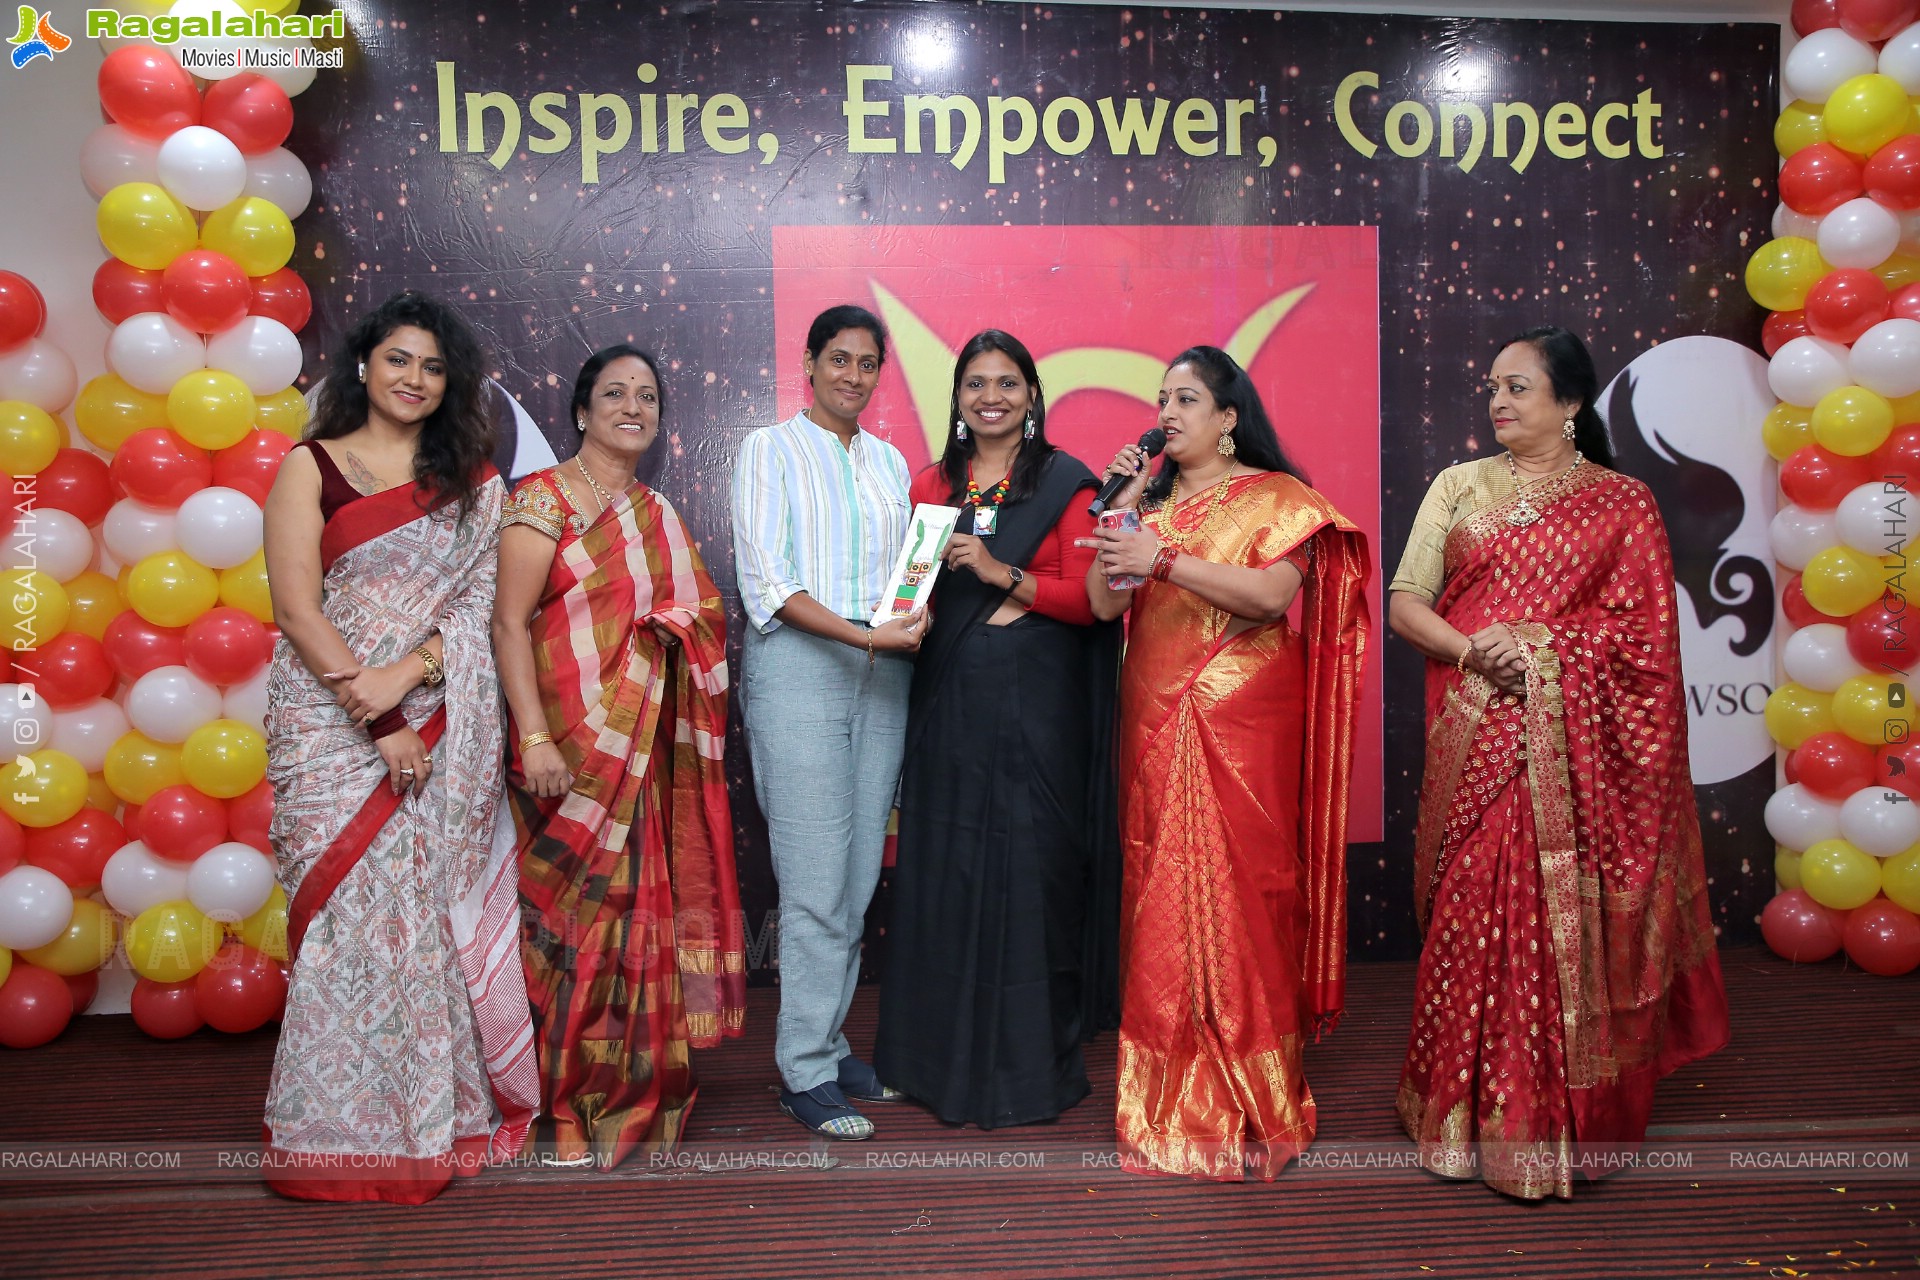 Narisena Global Women Forum Anniversary, Hyderabad